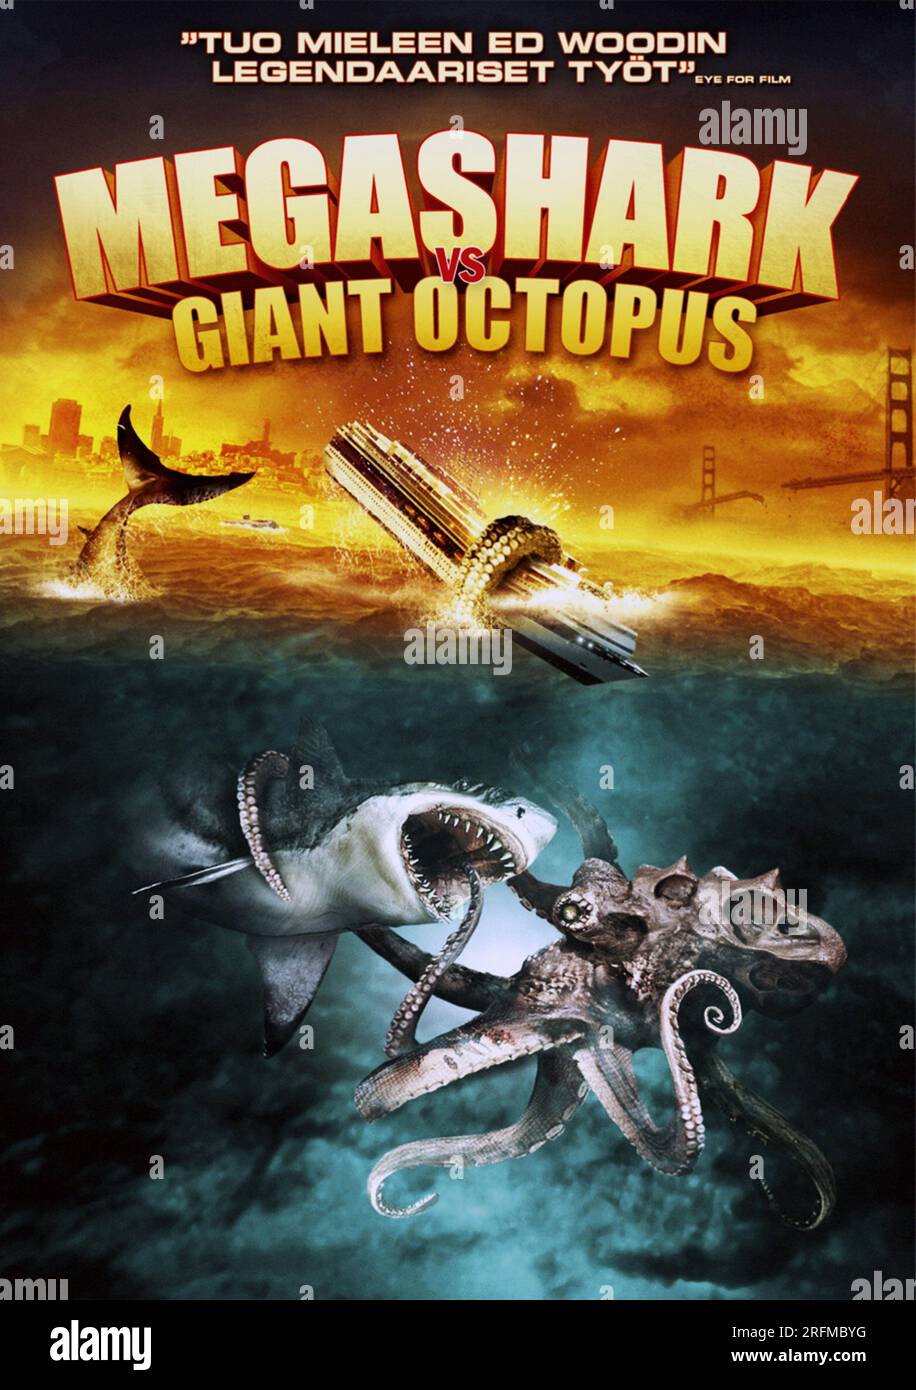 Megashark versus Giant Octopus' un film monstre/catastrophe sorti le 19 mai 2009 Banque D'Images